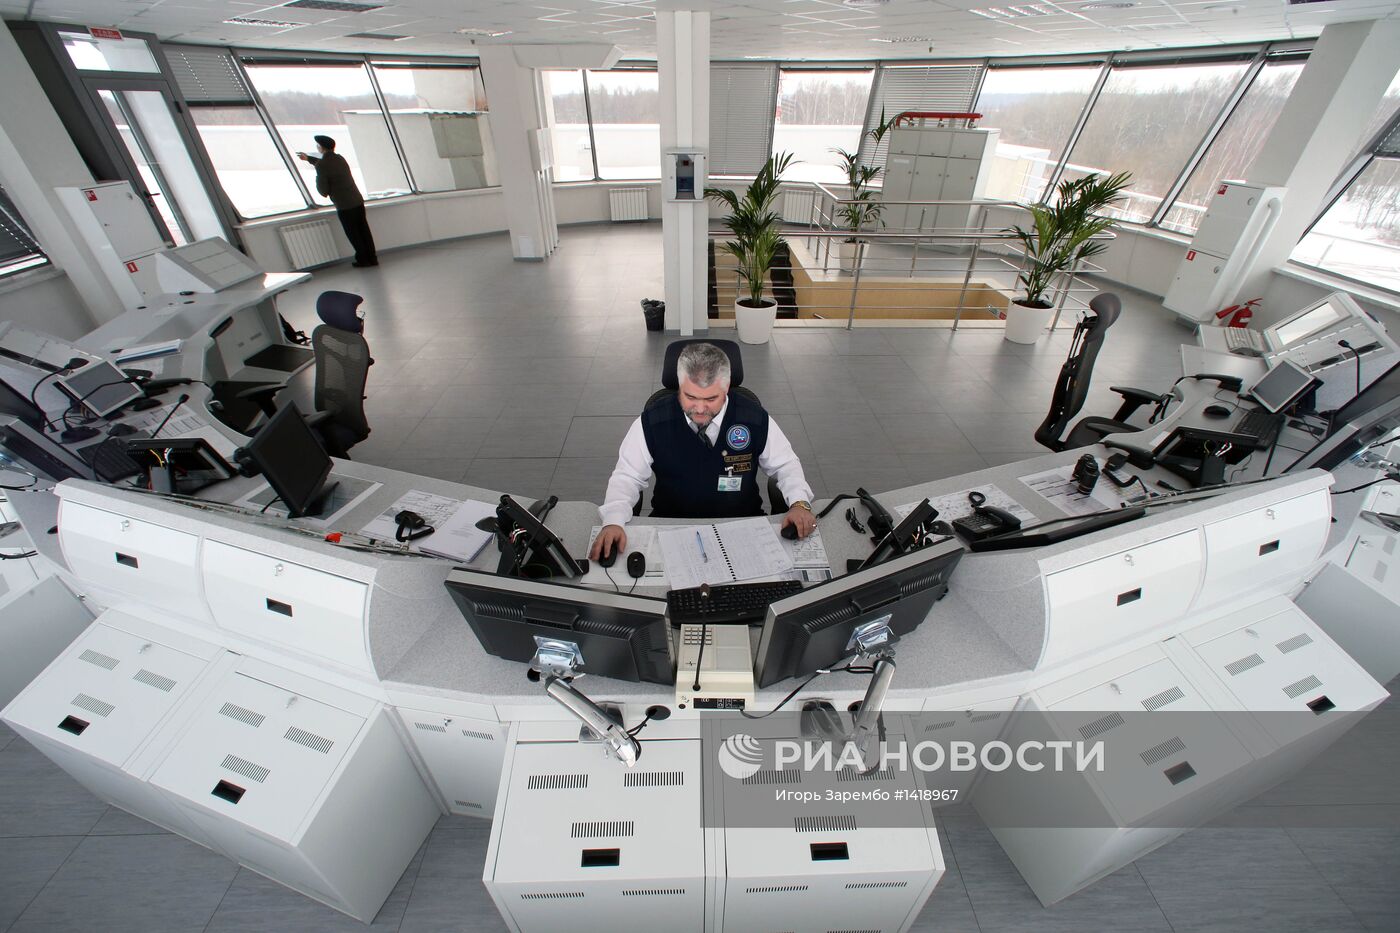 Современный диспетчерский центр аэропорта Храброво